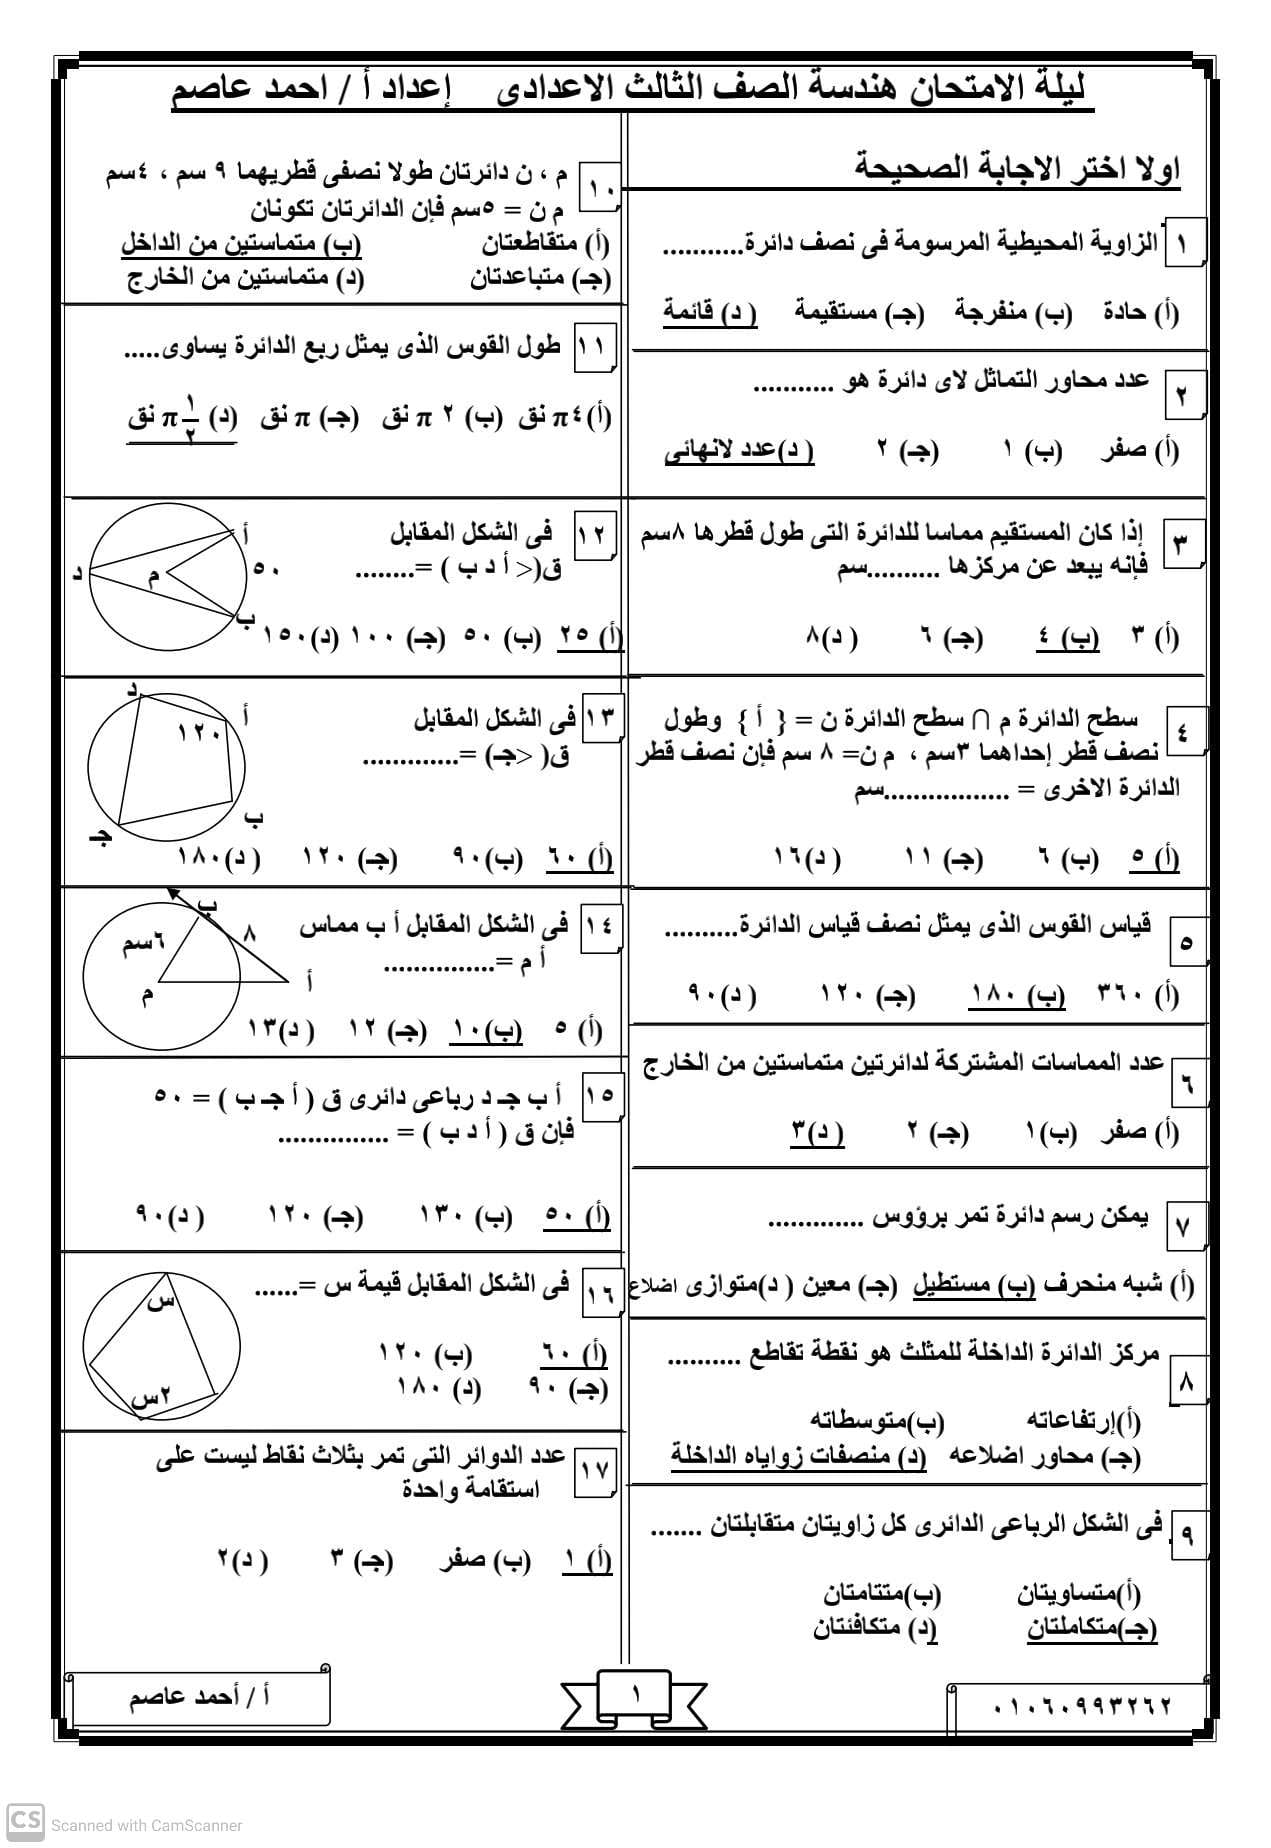 مراجعة نهائية فى الهندسة للصف الثالث الاعدادي الترم الثانى أ/ أحمد عاصم	 مدرس اول